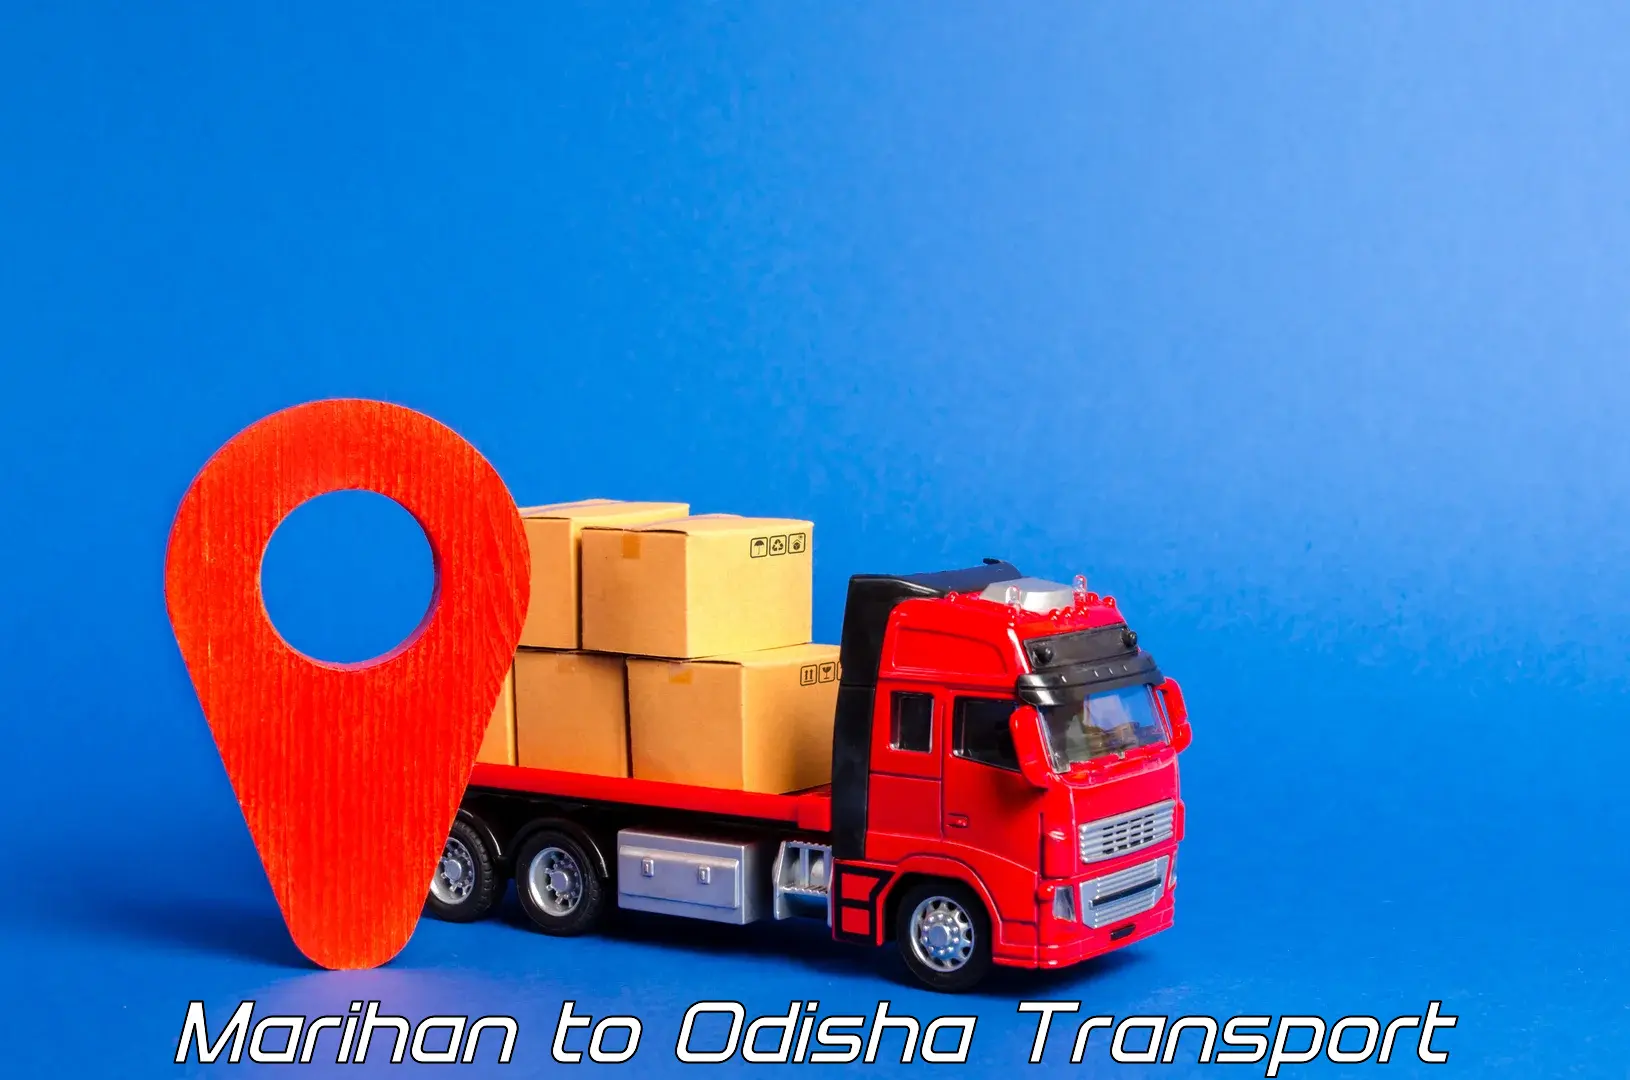 Nearest transport service Marihan to Chandipur